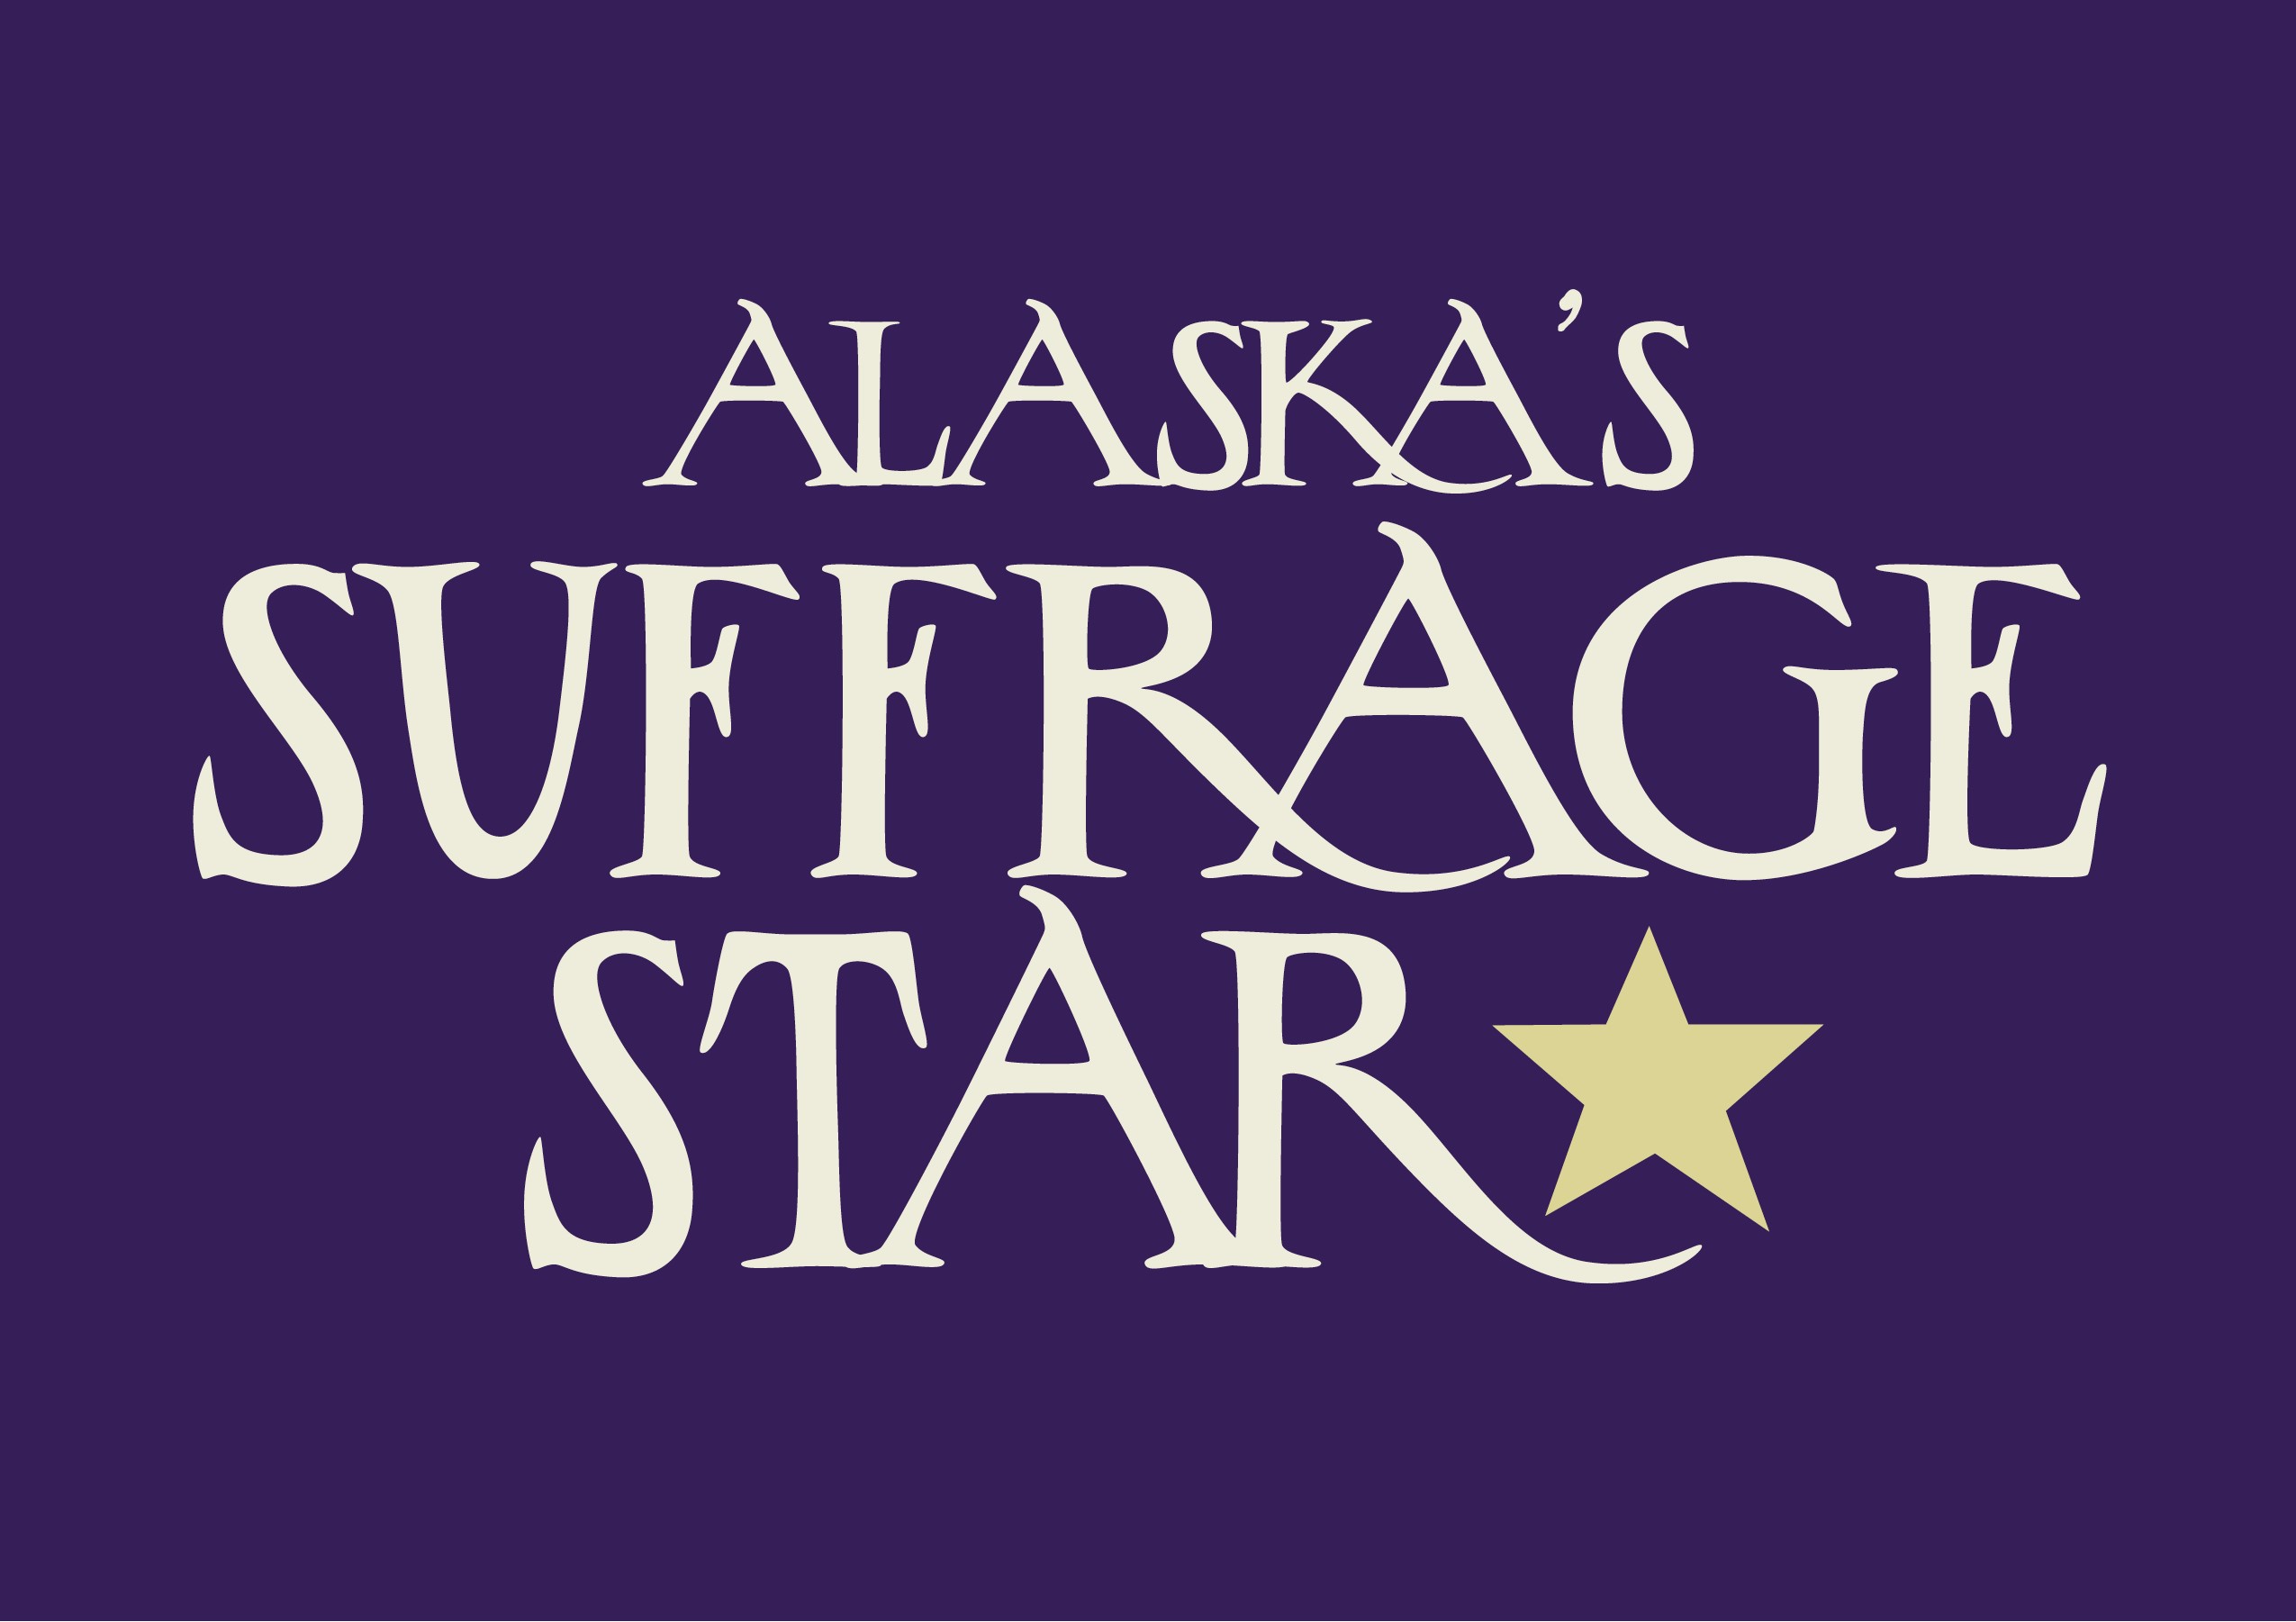 Alaska's Suffrage Star Exhibit